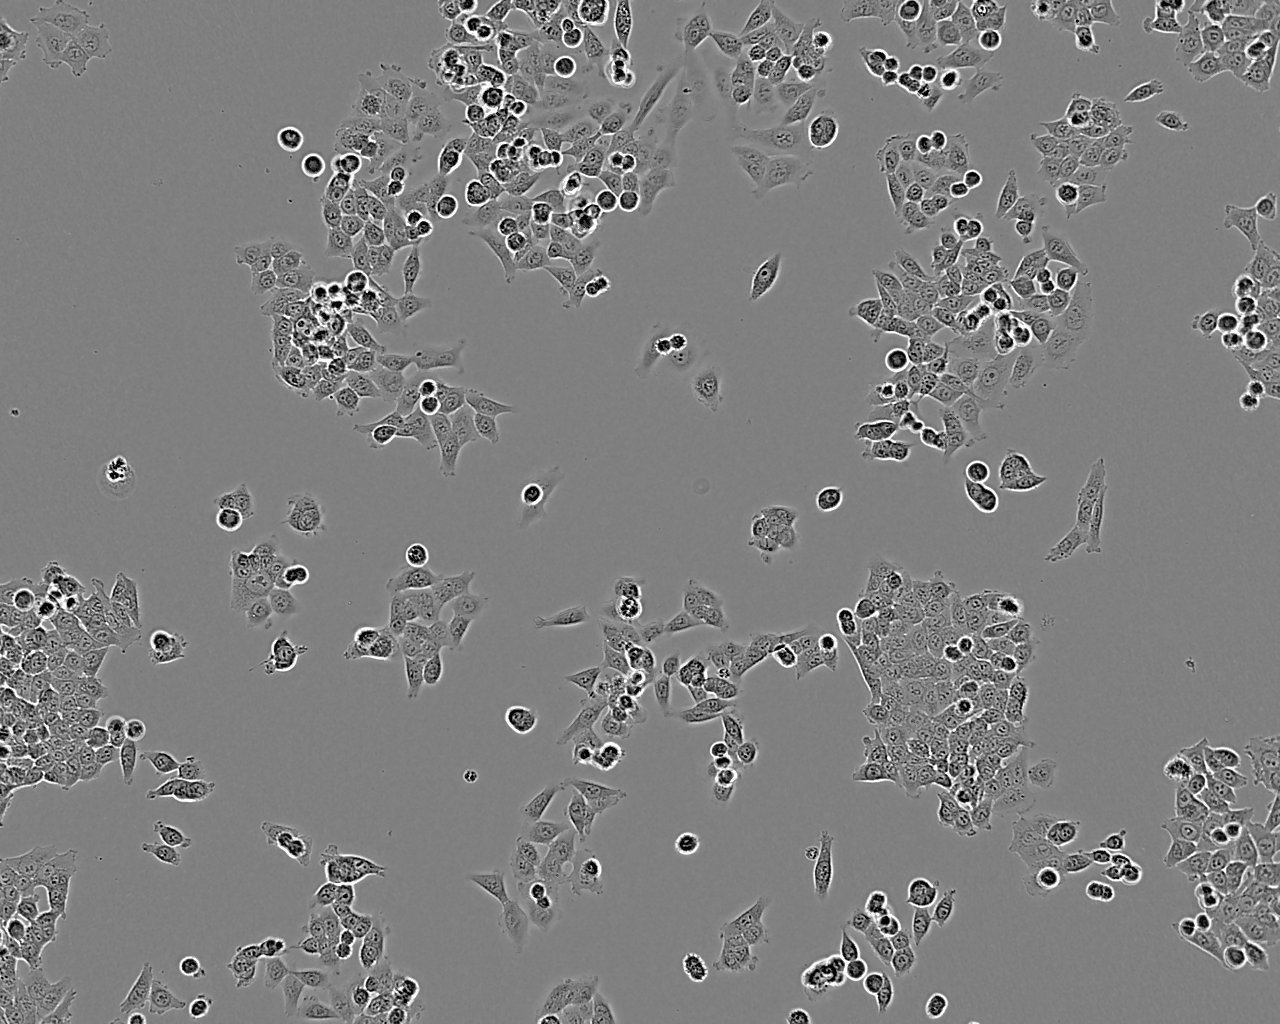 Hs 578Bst Cell:人正常乳腺细胞系,Hs 578Bst Cell